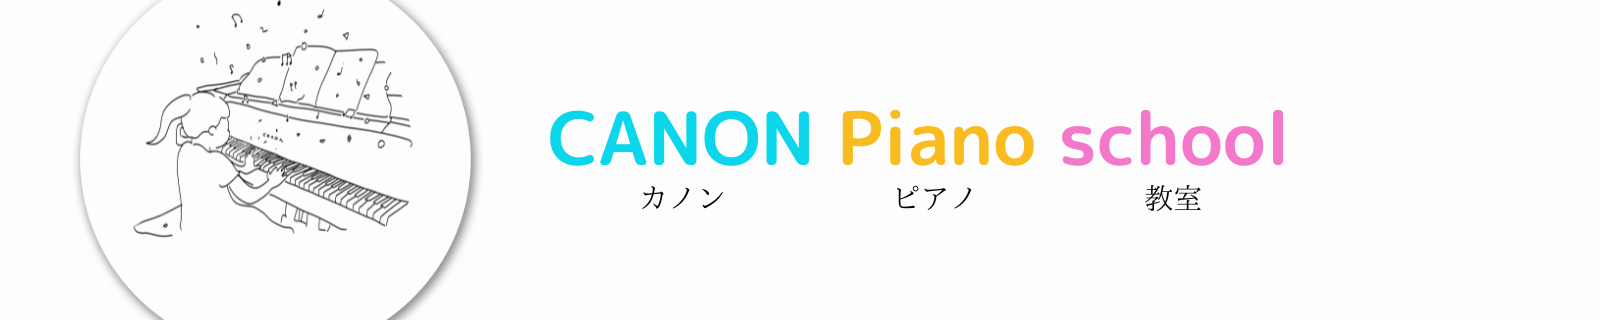 CANON Piano school